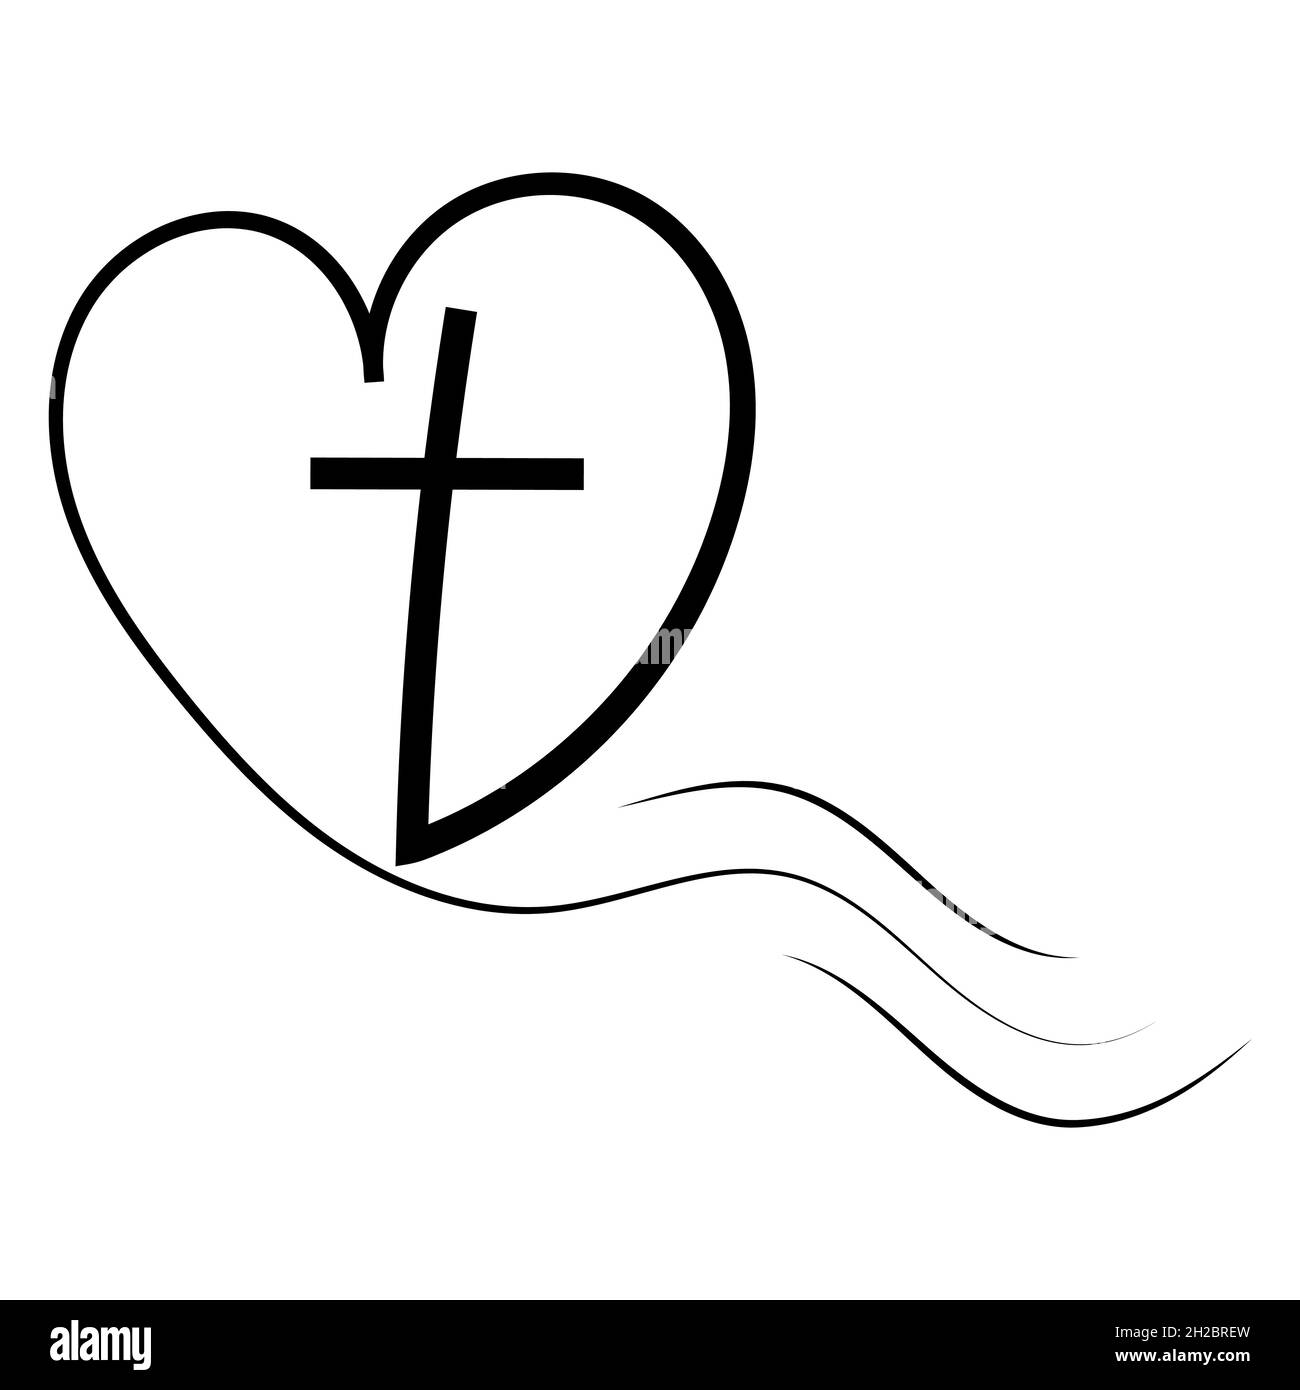 Logo-Vorlage für Kirchen Liebe zu Gott Kreuz im Herzen. Religiöse Kalligraphie Kreuz und Herz Stock Illustration Stock Vektor